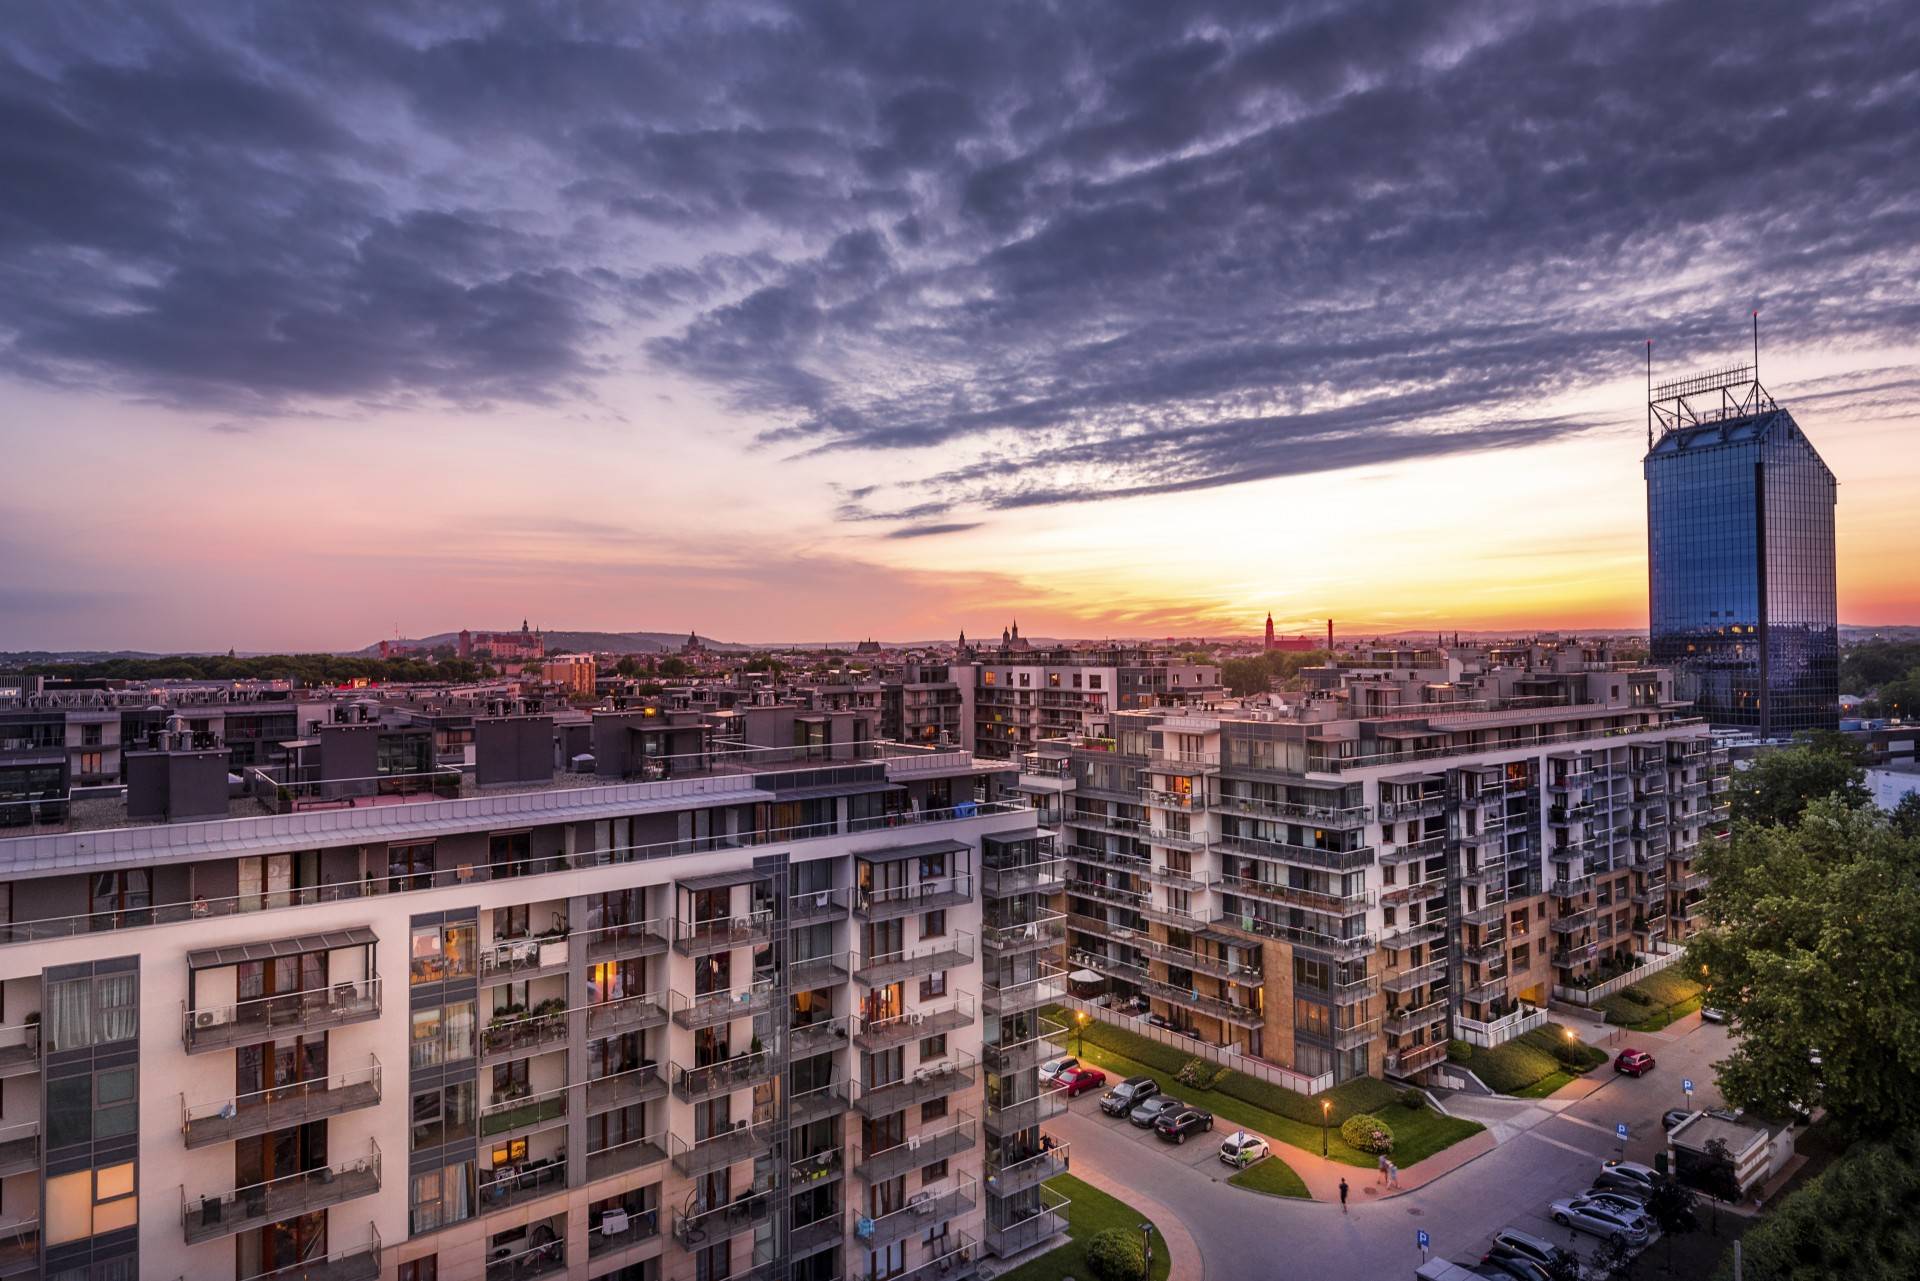 Prawdopodobnie najładniejsze, nowe osiedle w Krakowie